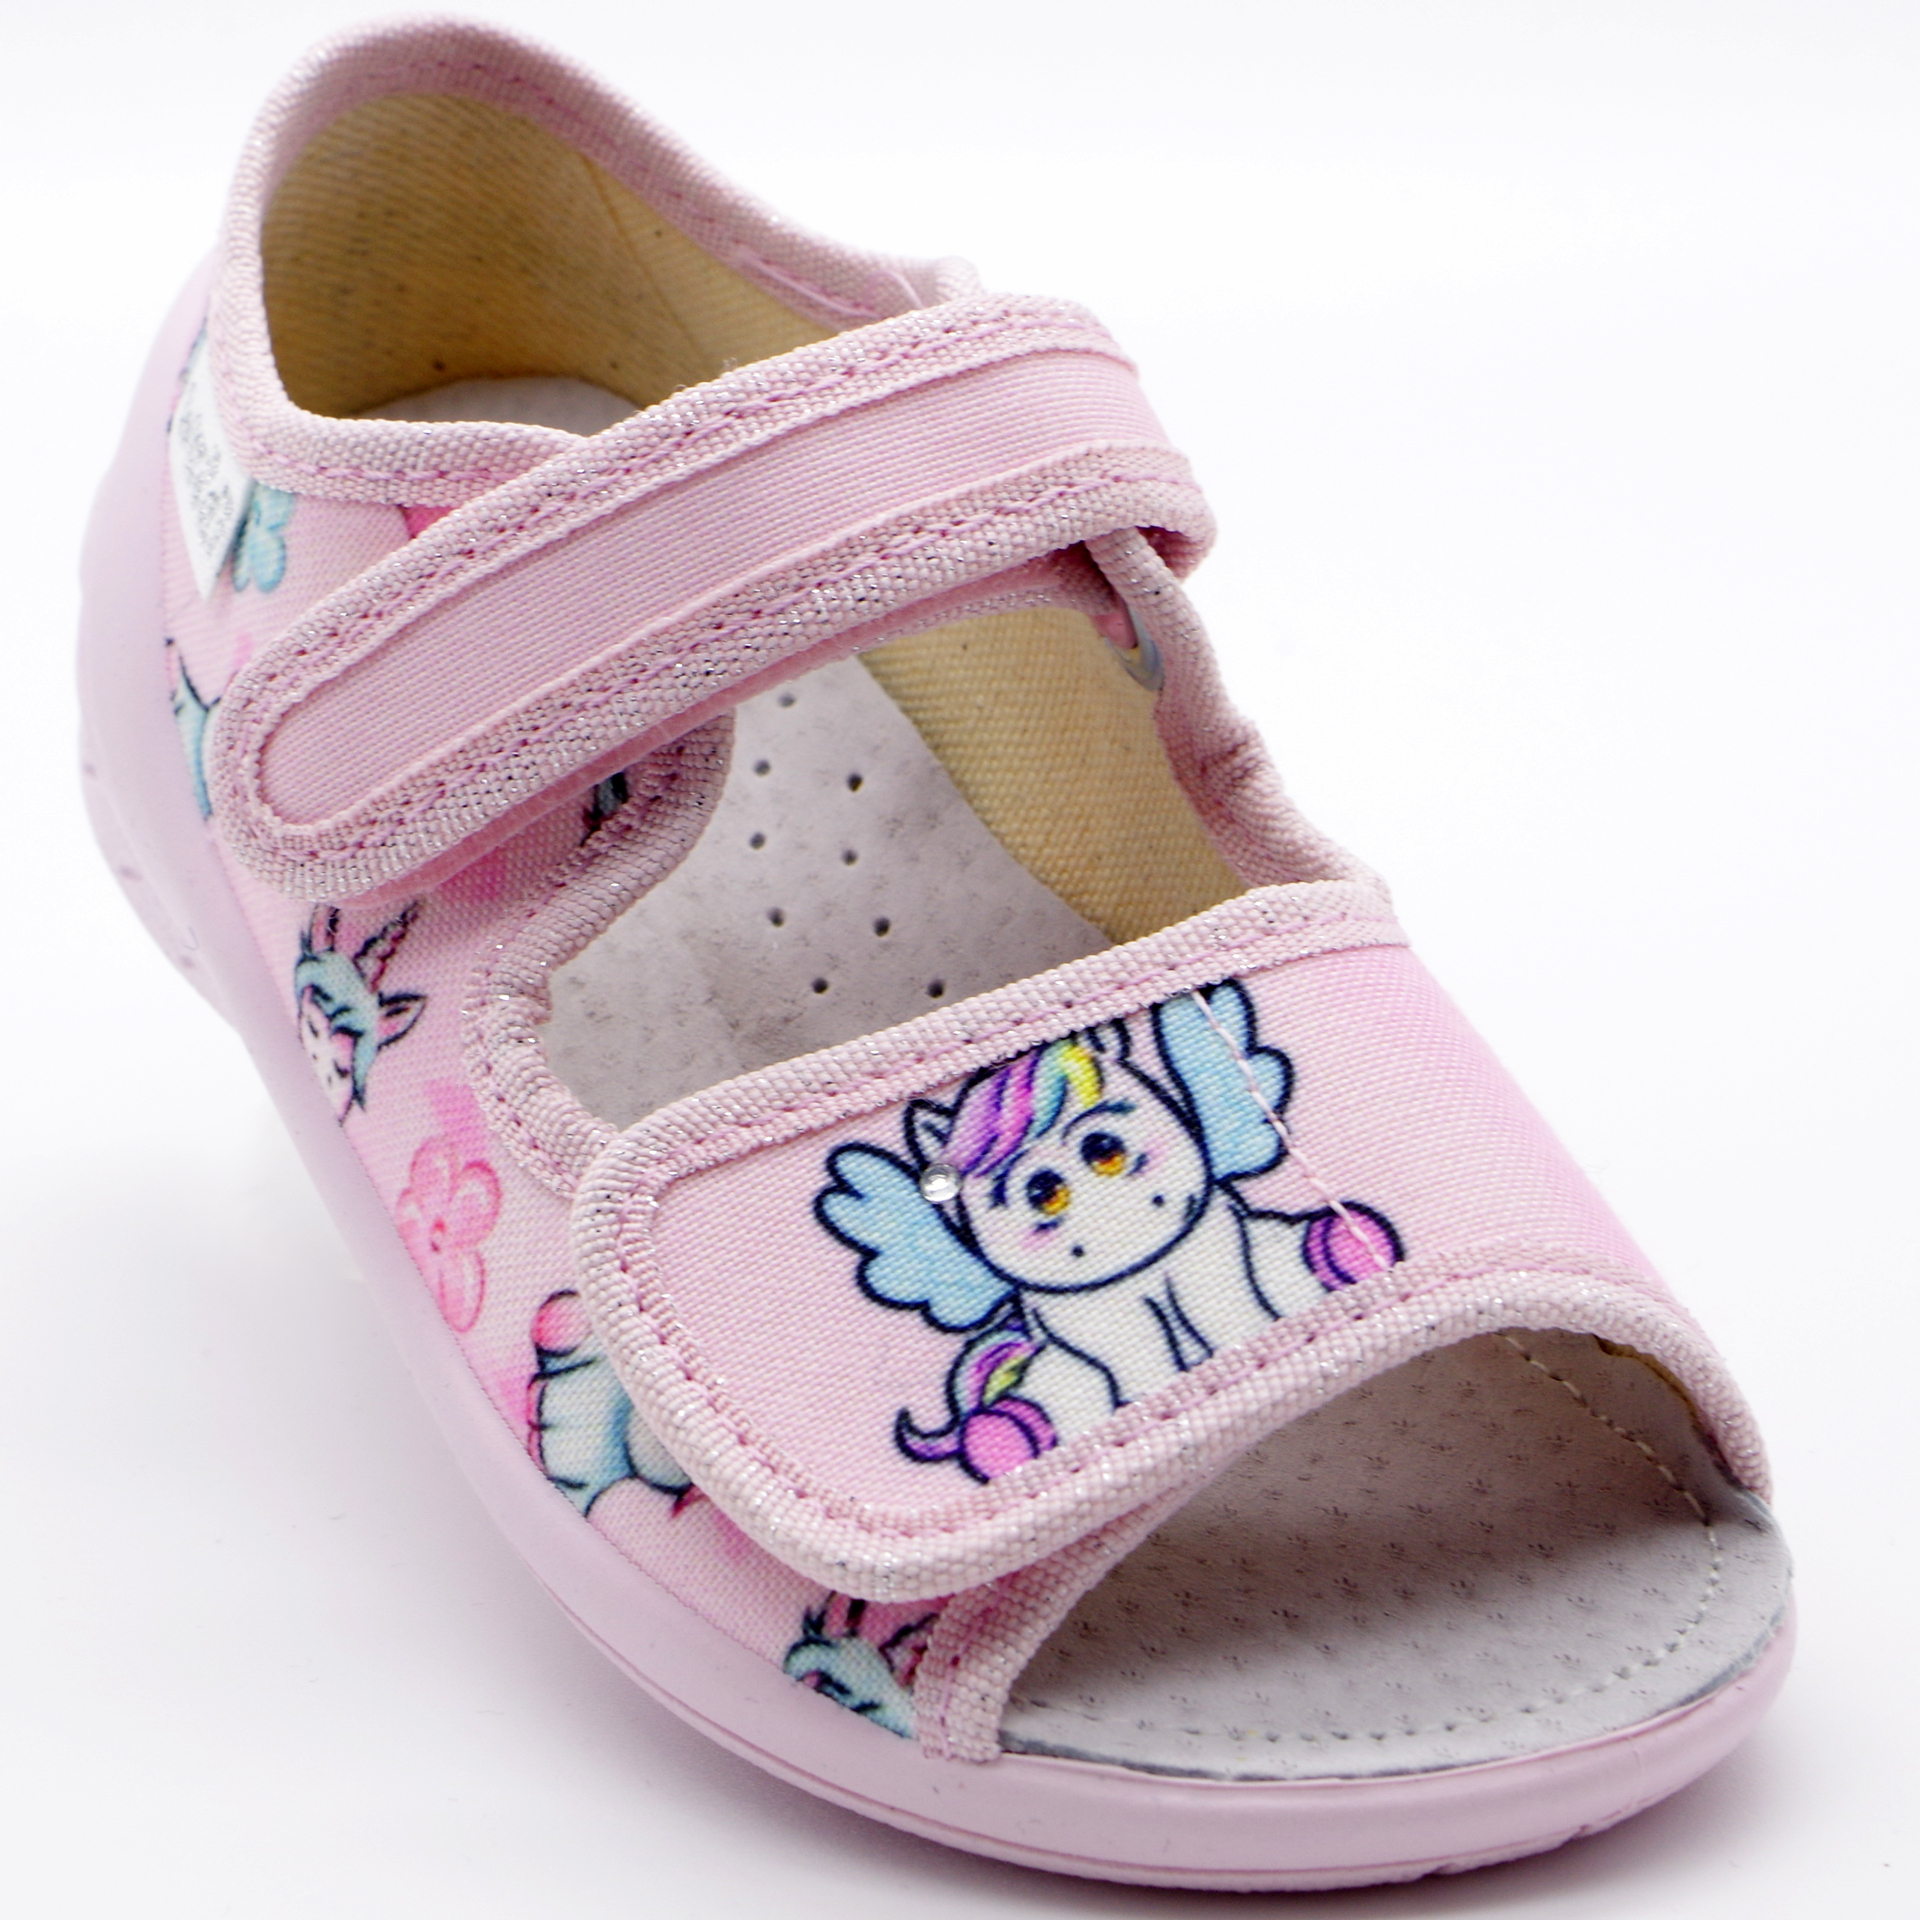 Текстильная обувь для девочек Тапочки Ева Единорог (2180) цвет Микс 23-30 размеры – Sole Kids. Фото 1